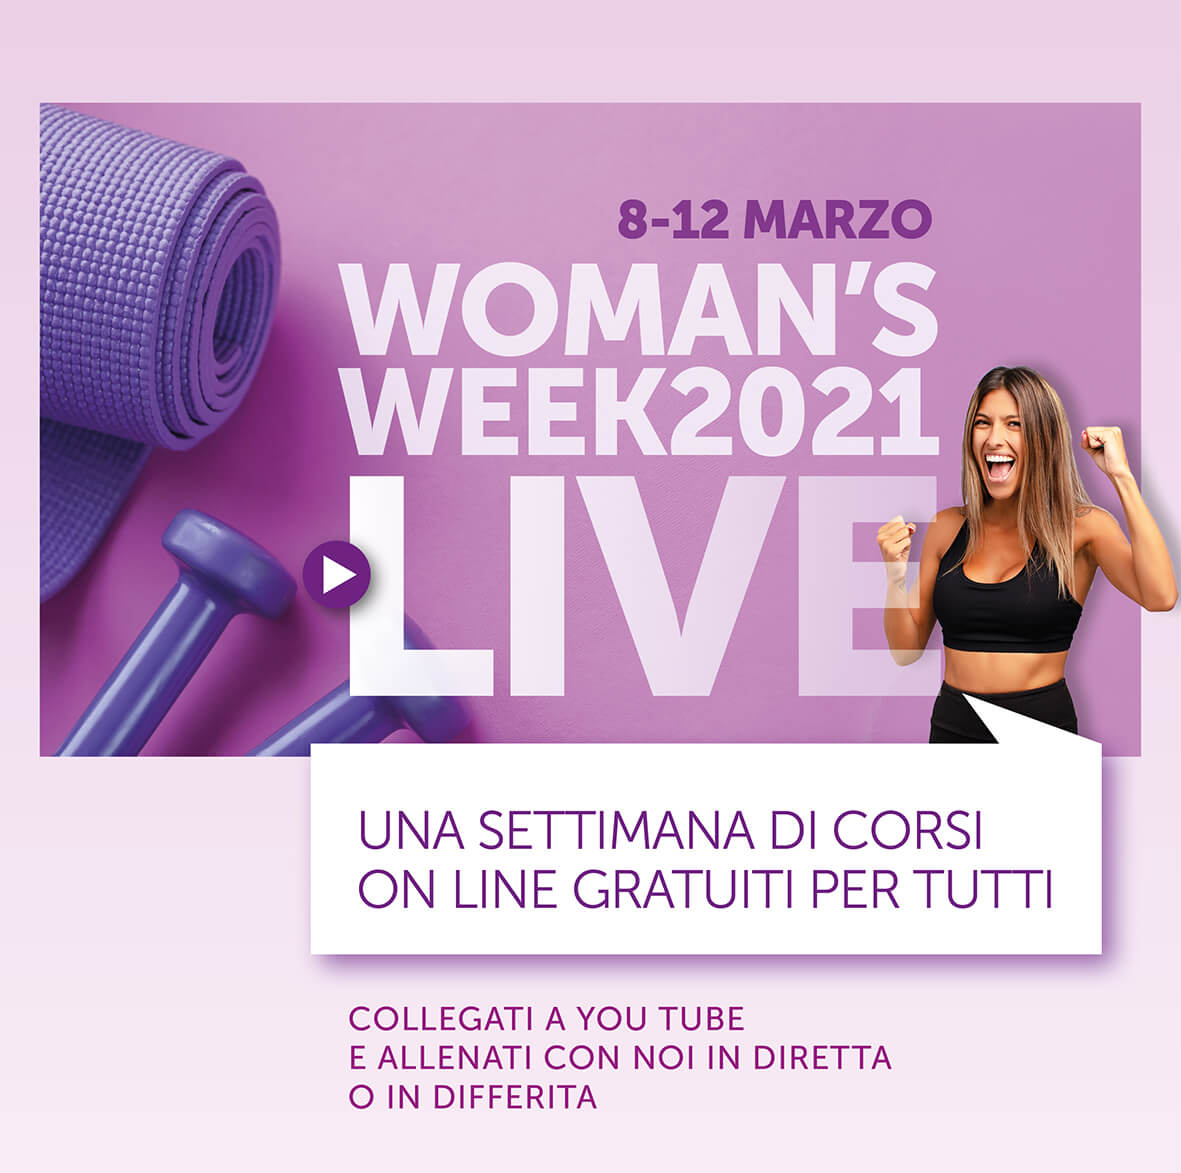 Donne in movimento Monza - Woman's week 2021